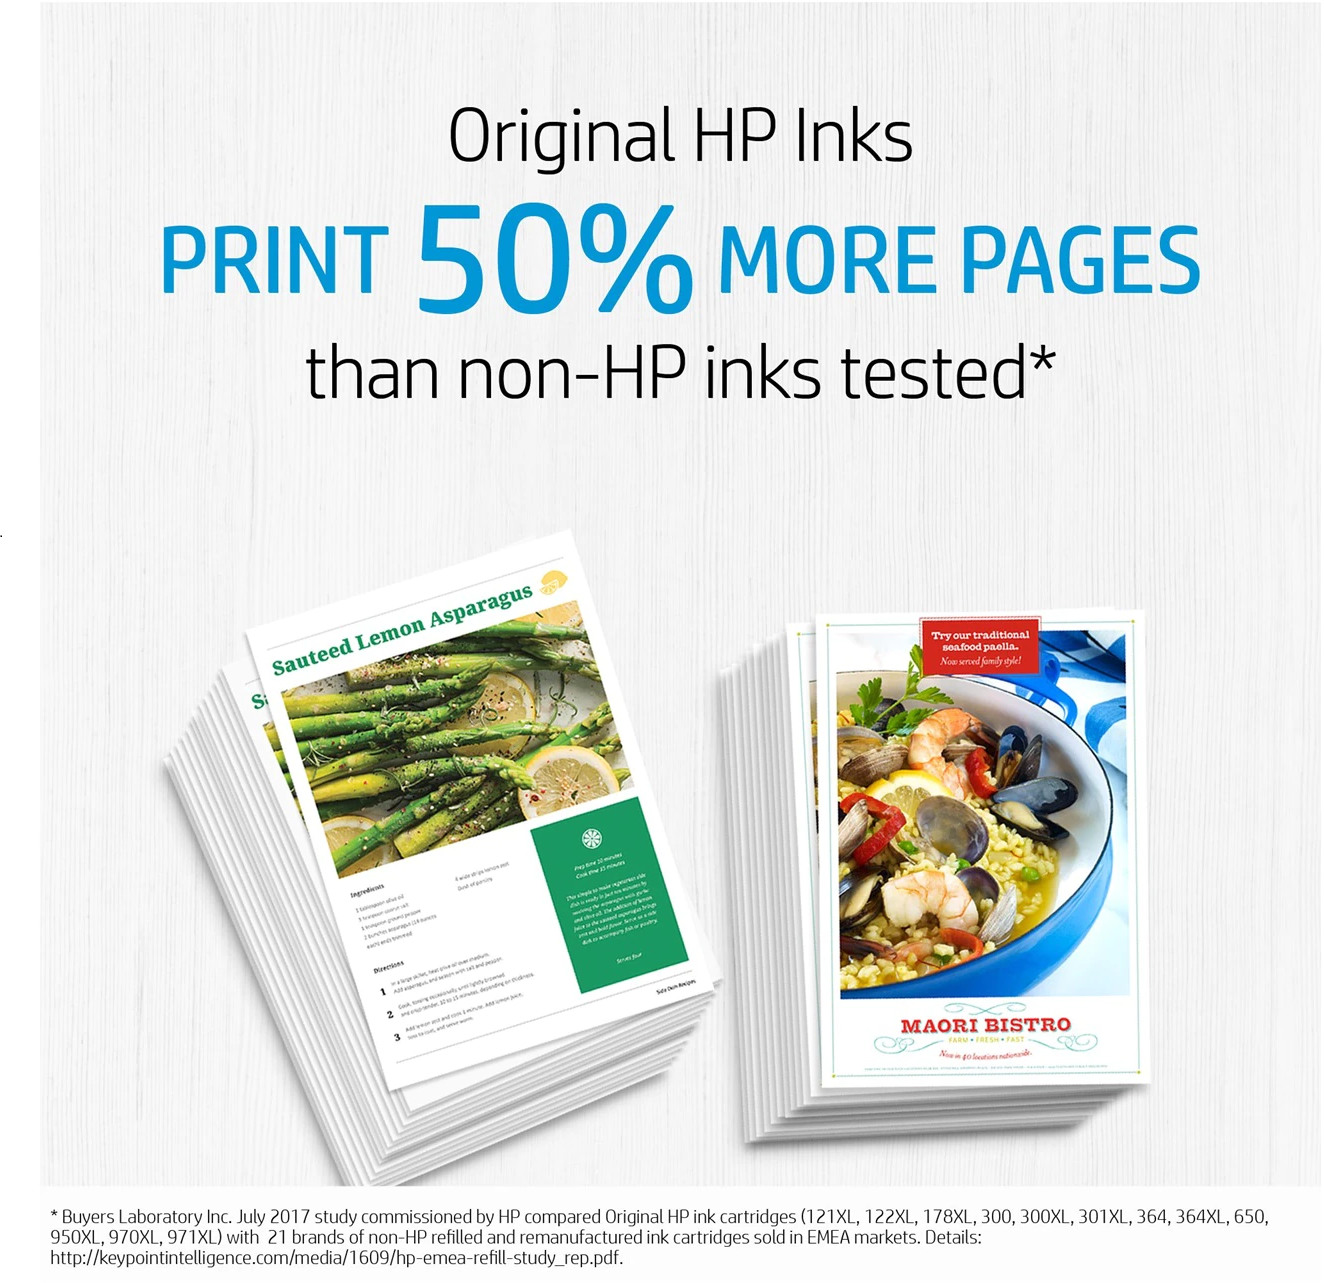 HP Adv. Photo Paper 10 feuilles 49V51A Gloss 4x12in/10x30,5cm